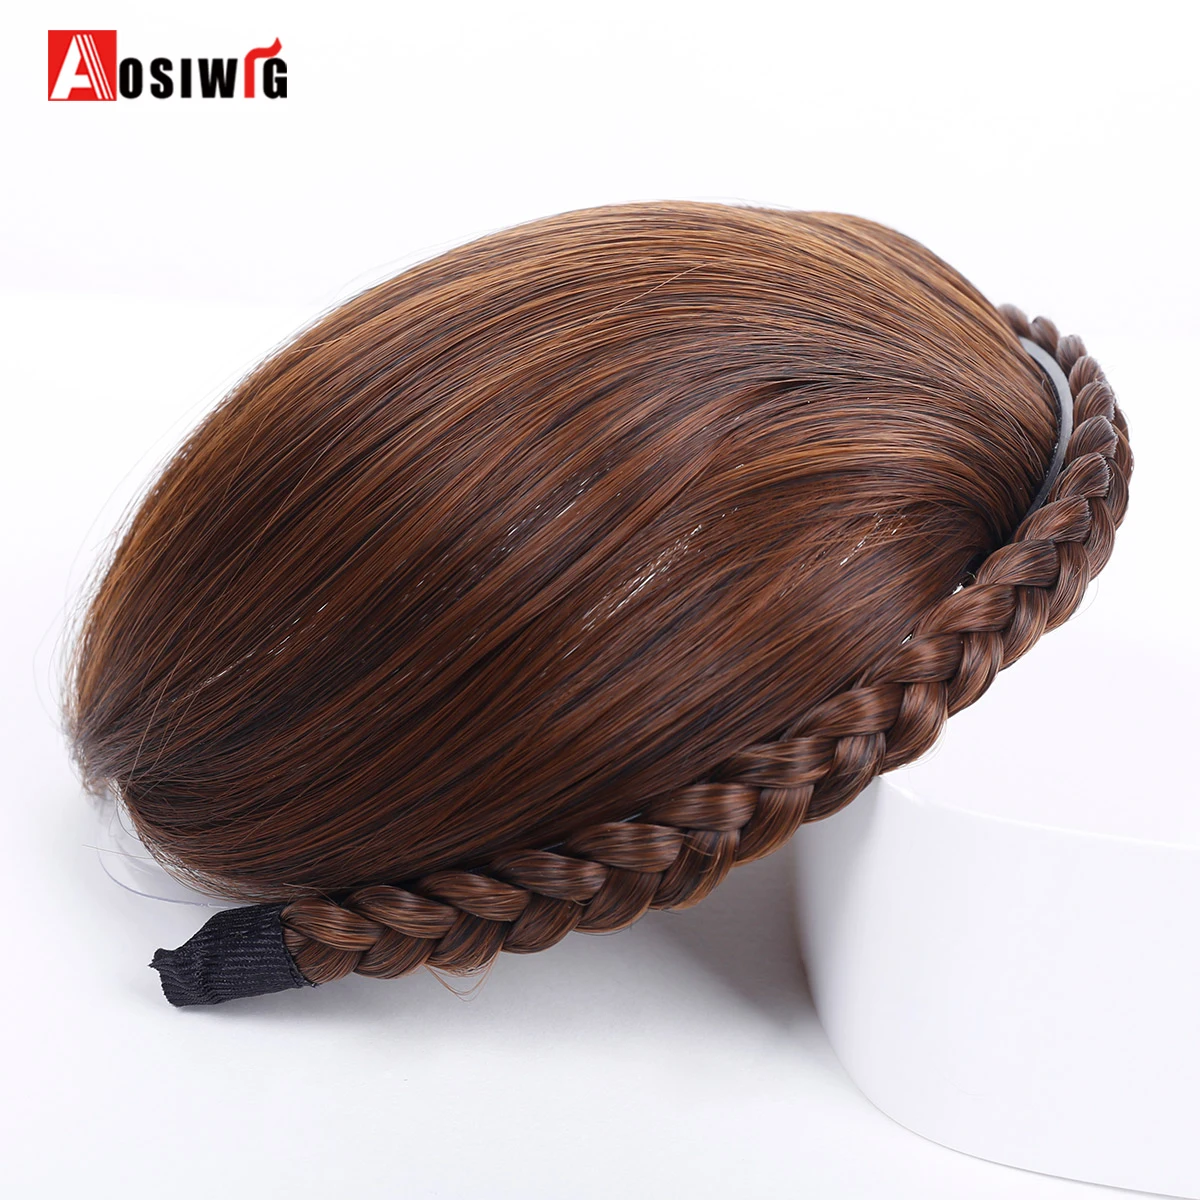 AOSIWIG, Короткая Передняя бахрома, коса, челка для женщин, термостойкие синтетические накладные волосы с бахромой на заколках для наращивания челки